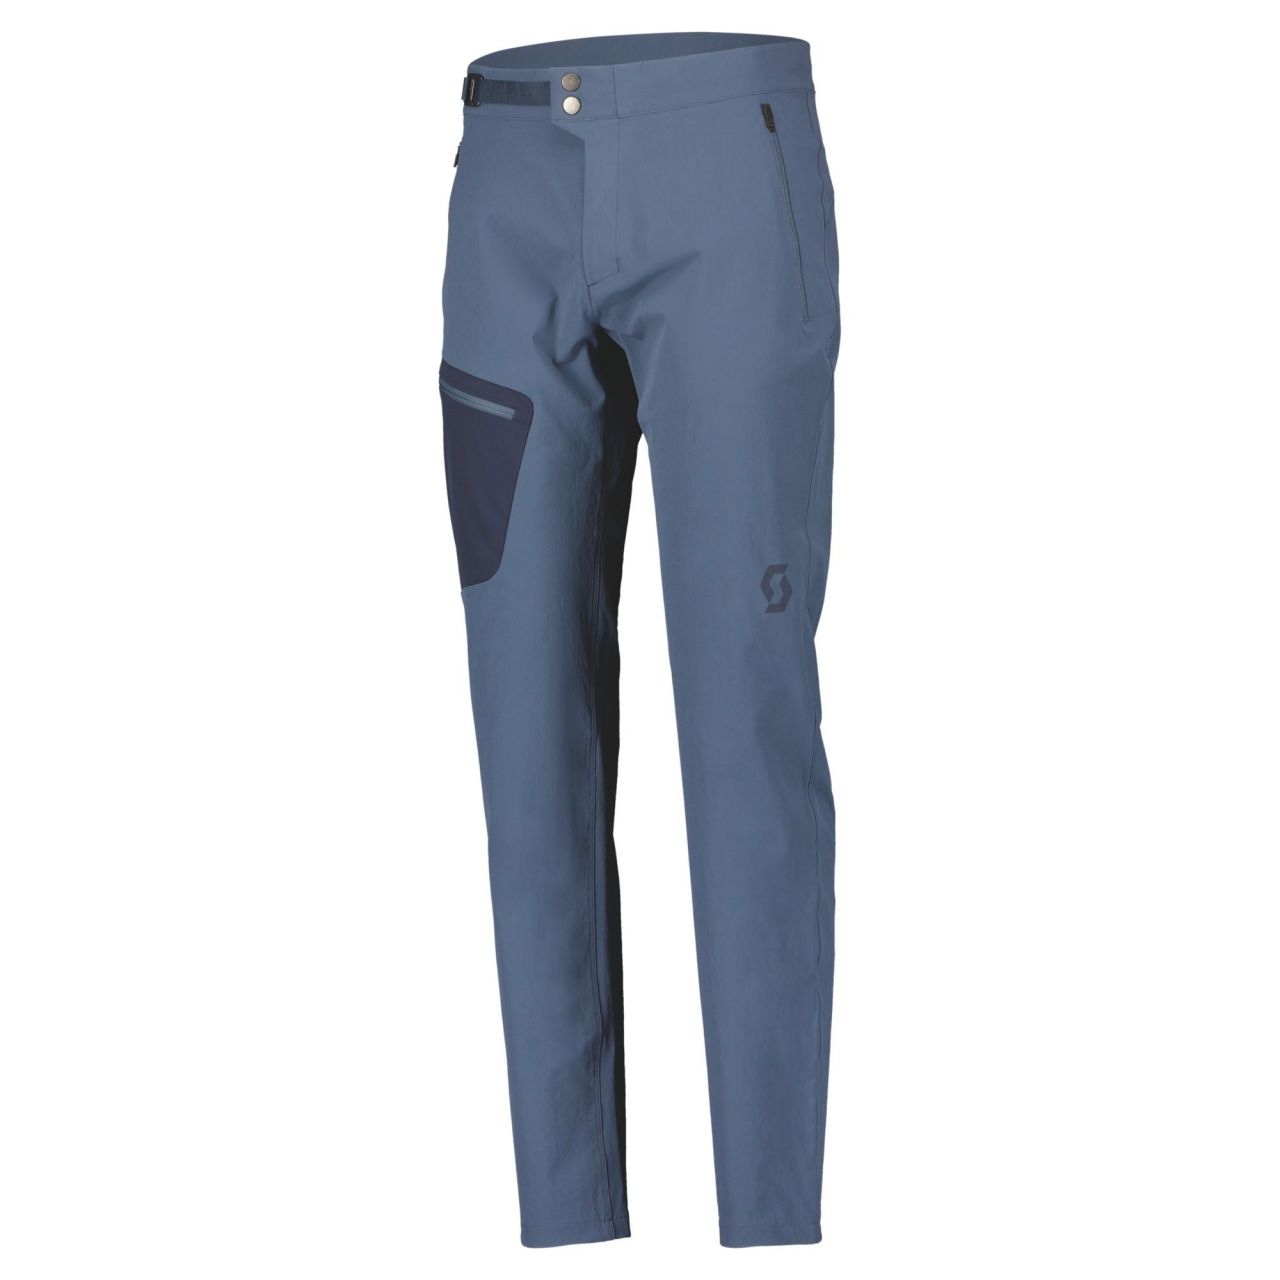 SCOTT PANT EXPLORAIR LIGHT METAL BLUE Pantalon de randonnée